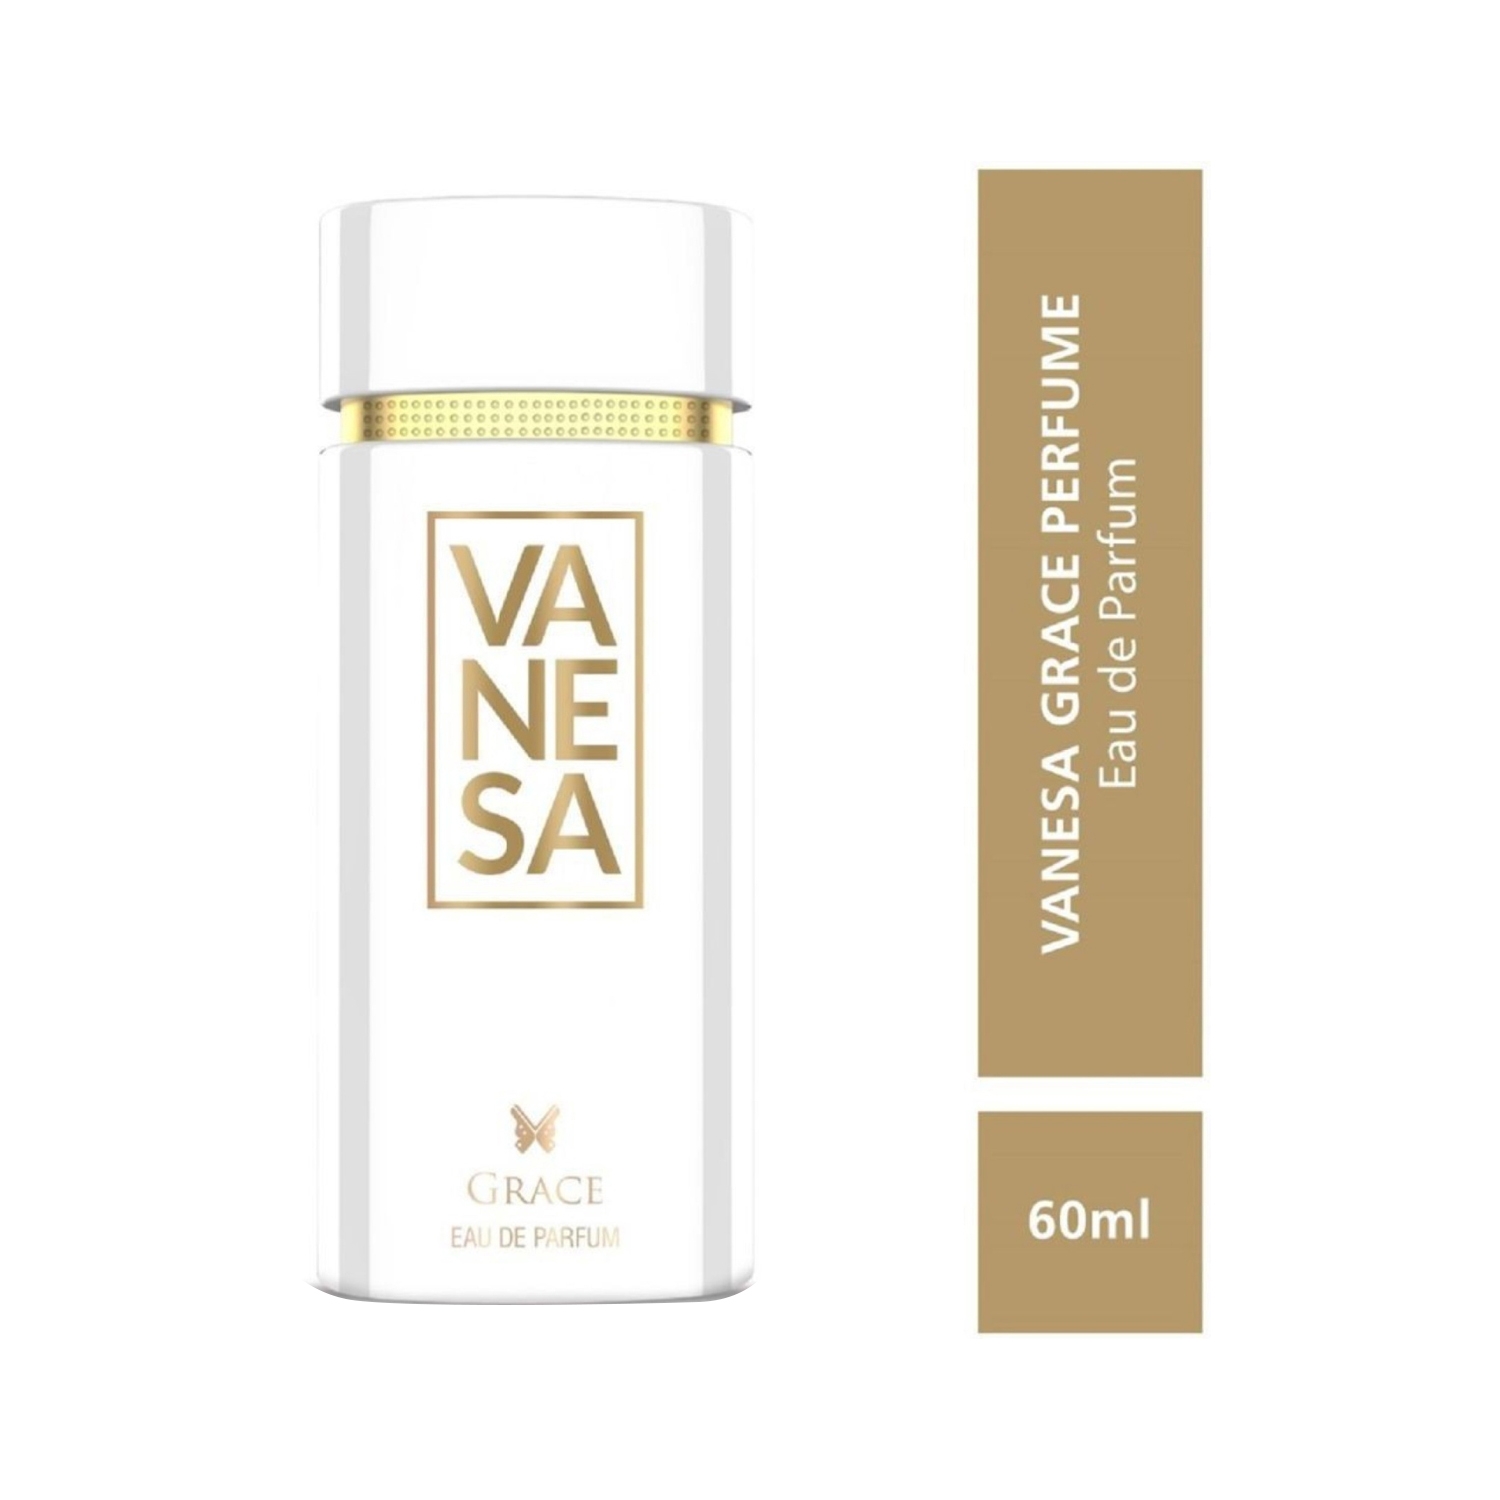 Vanesa Grace Eau De Parfum (60ml)